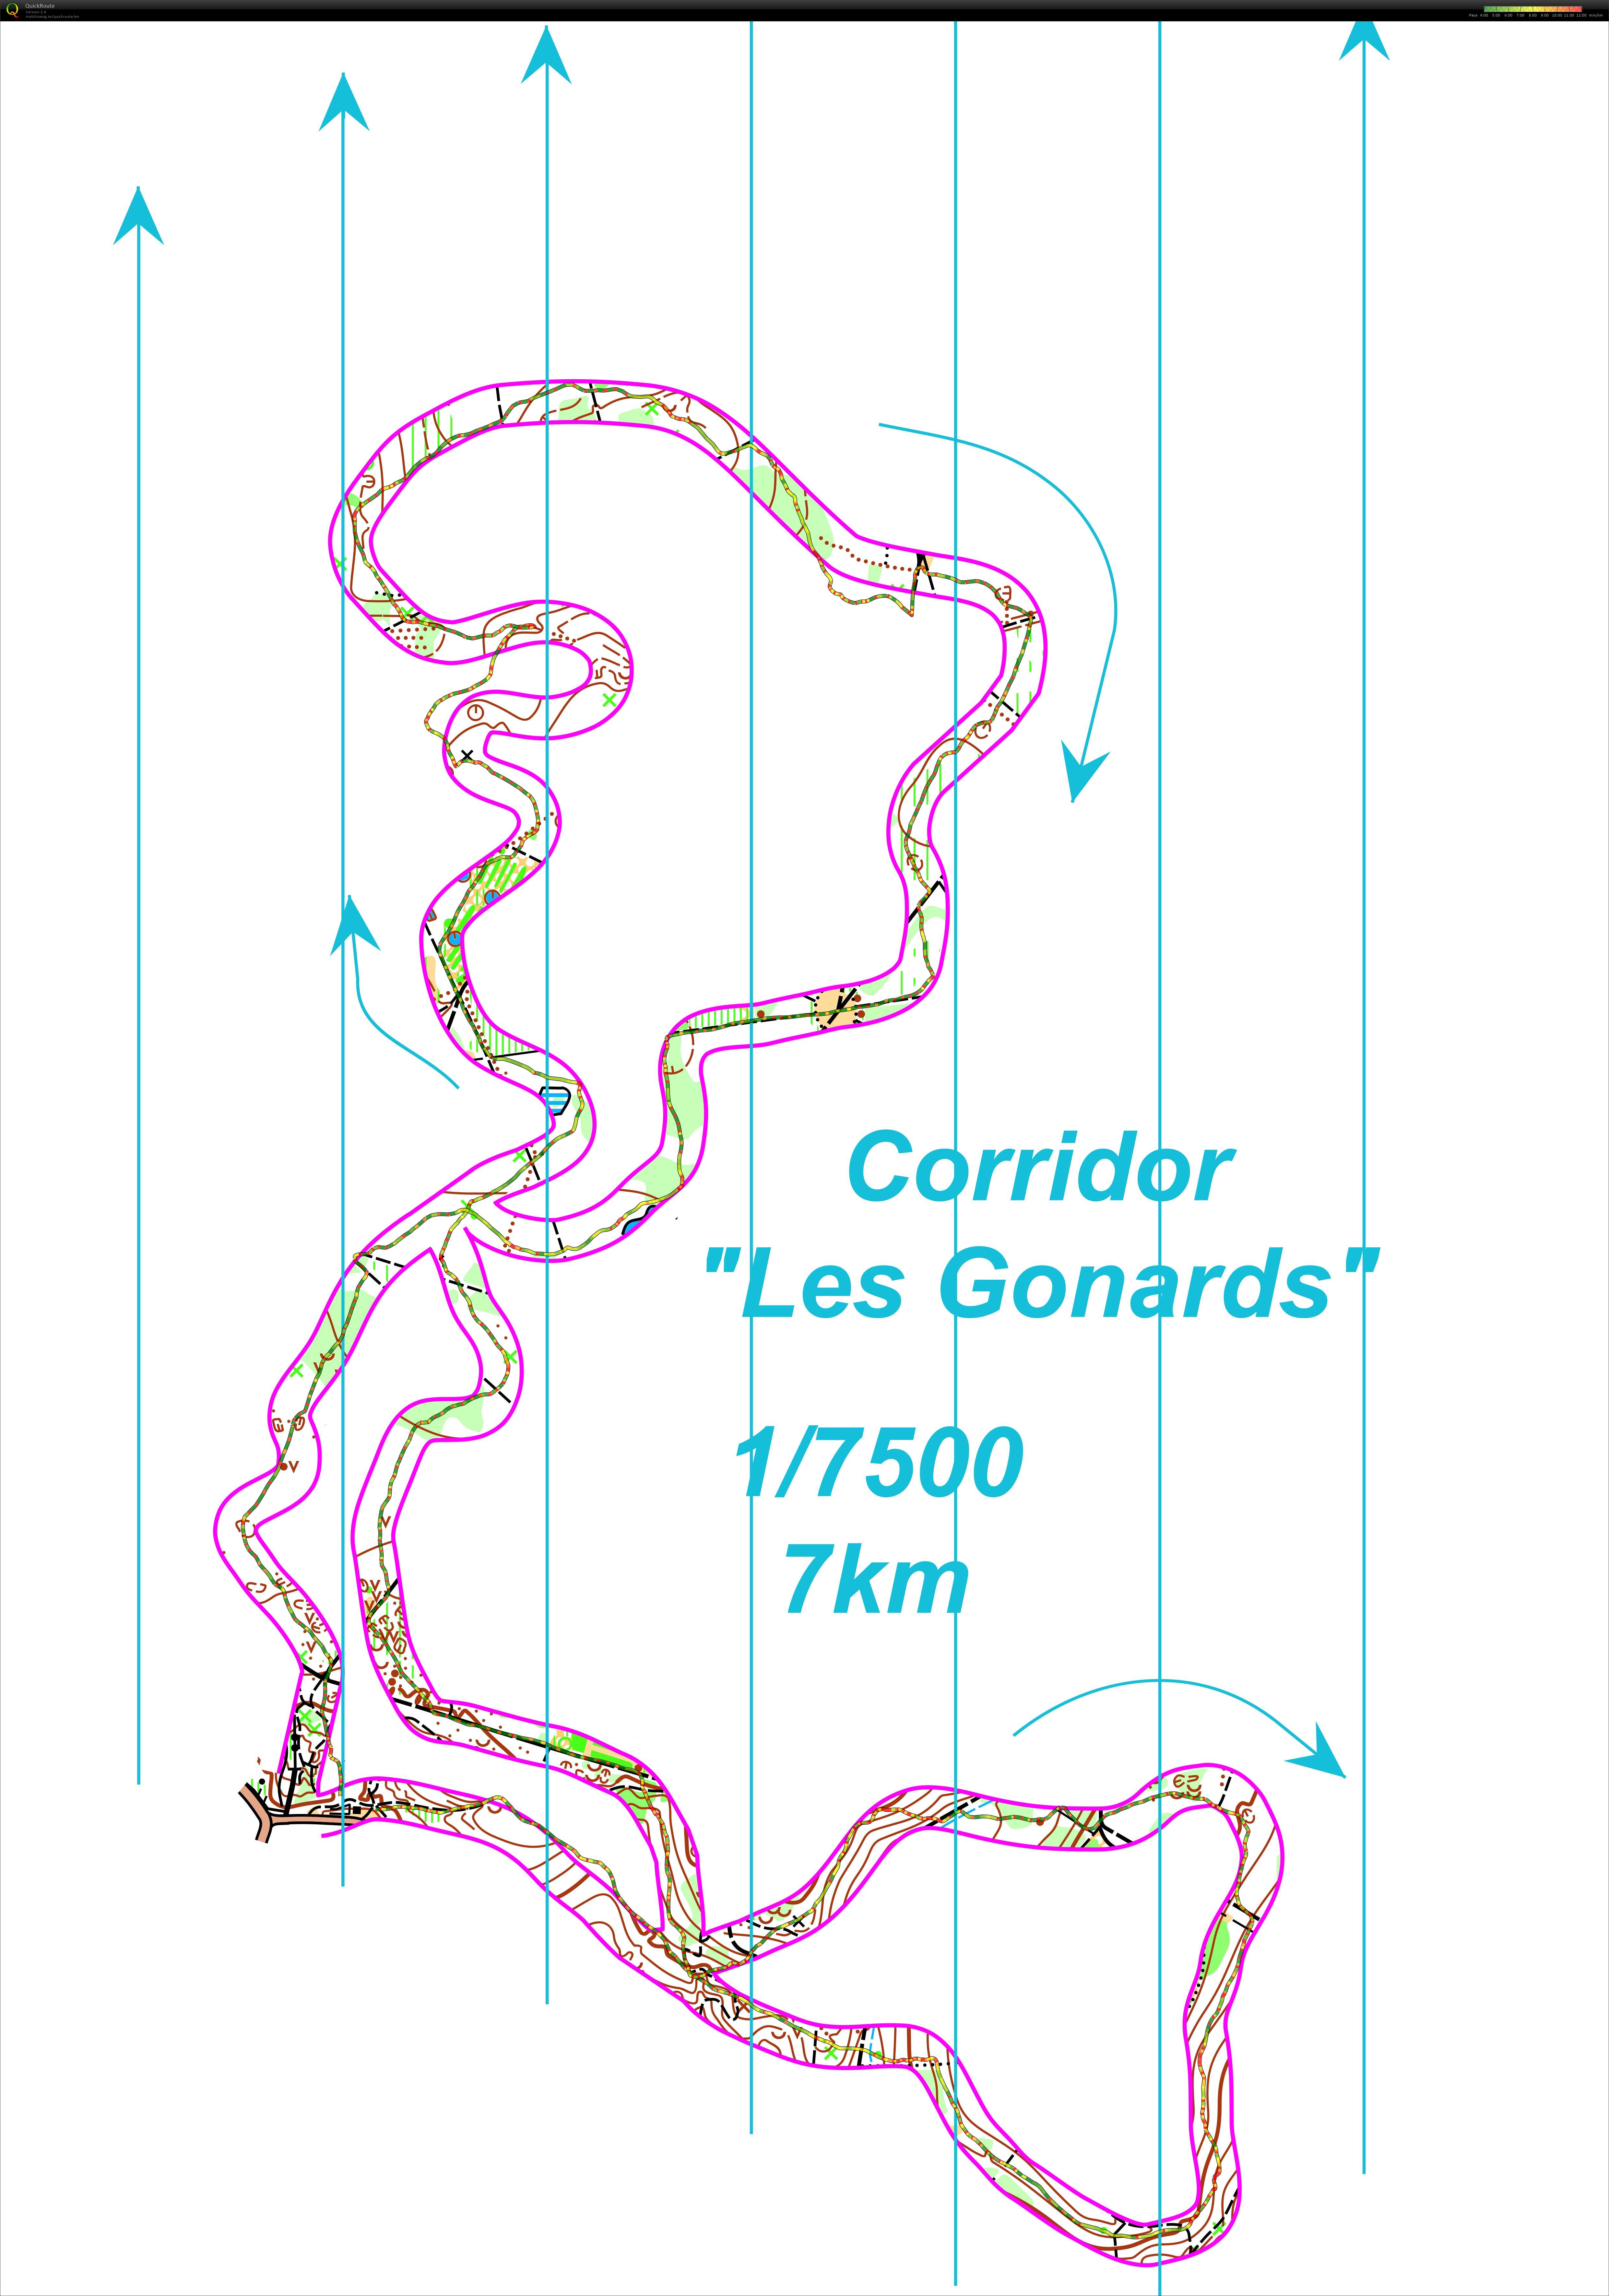 Corridor gonards  (29.11.2017)